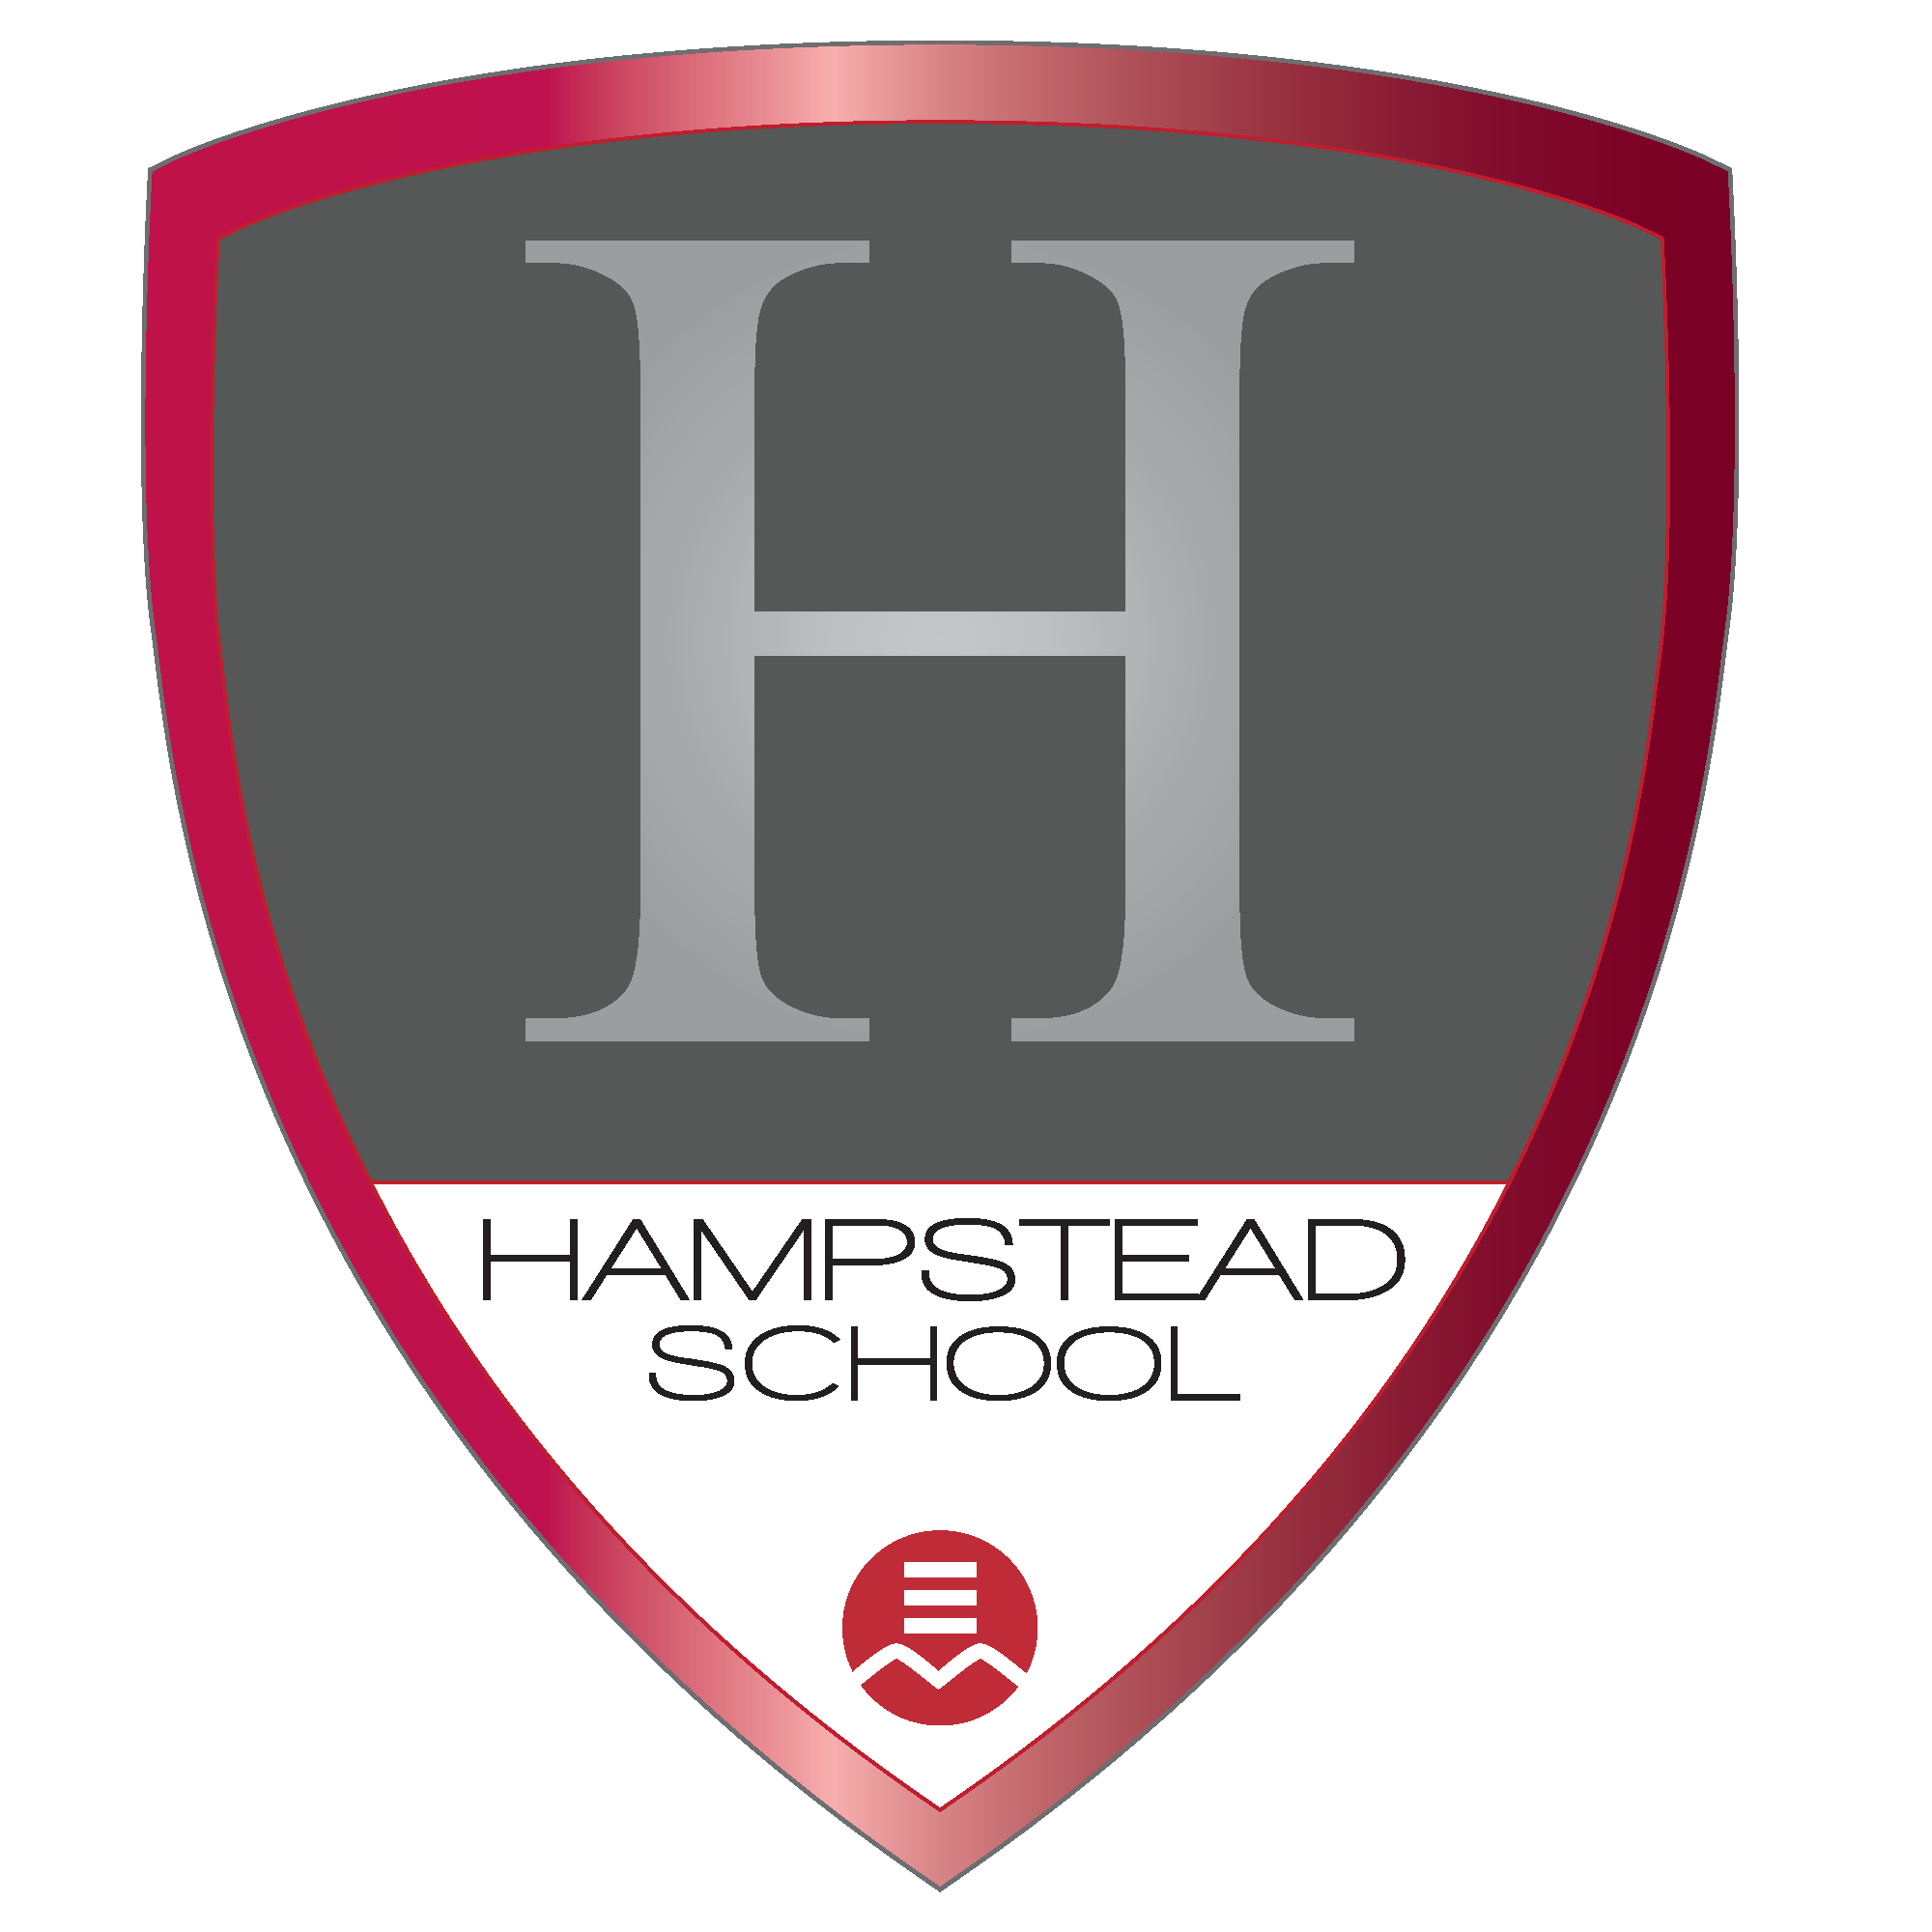 Hampstead school